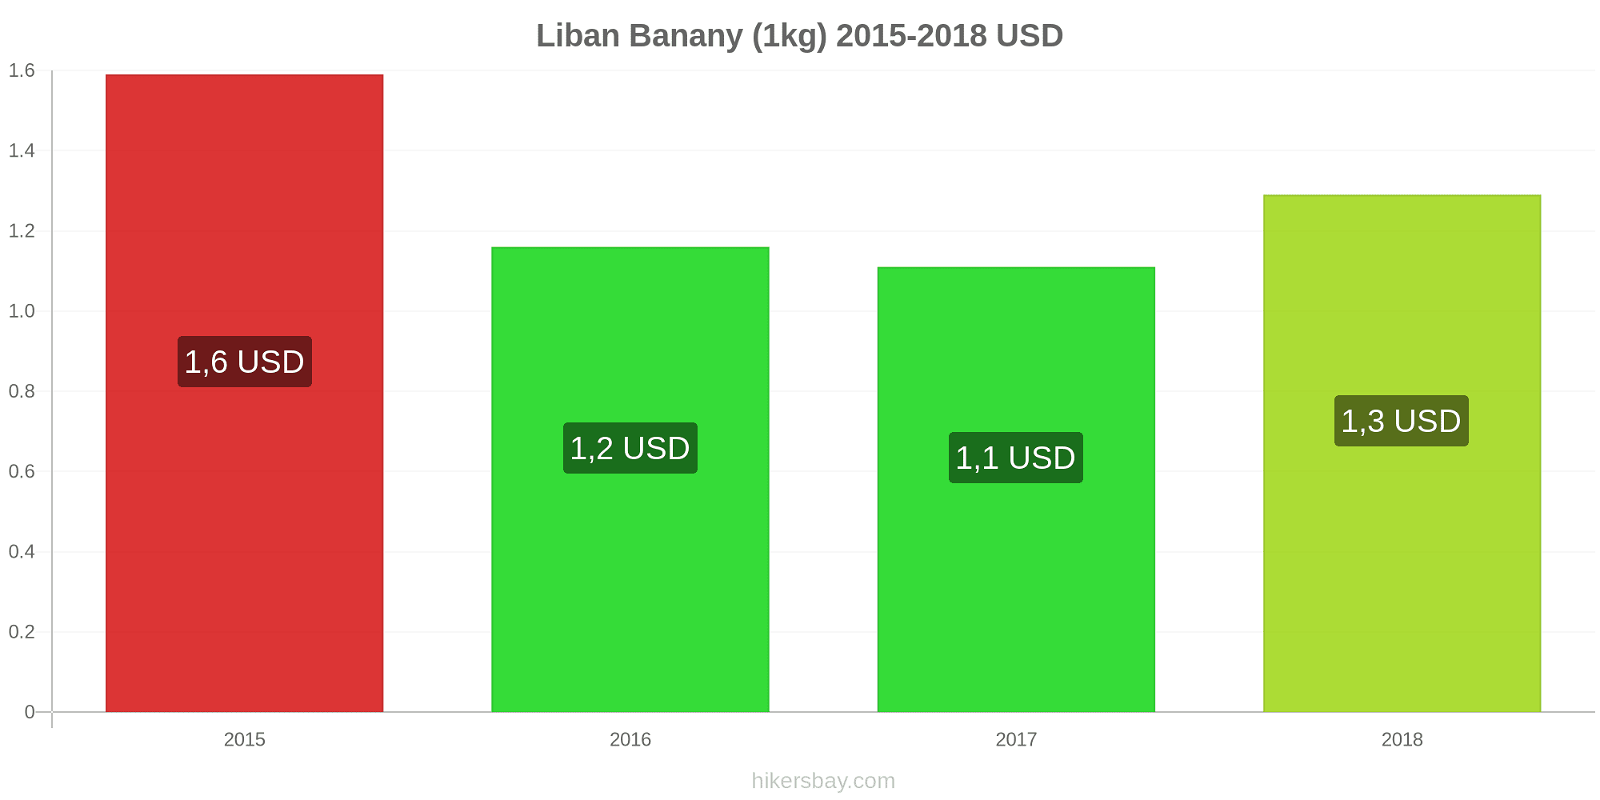 Liban zmiany cen Banany (1kg) hikersbay.com